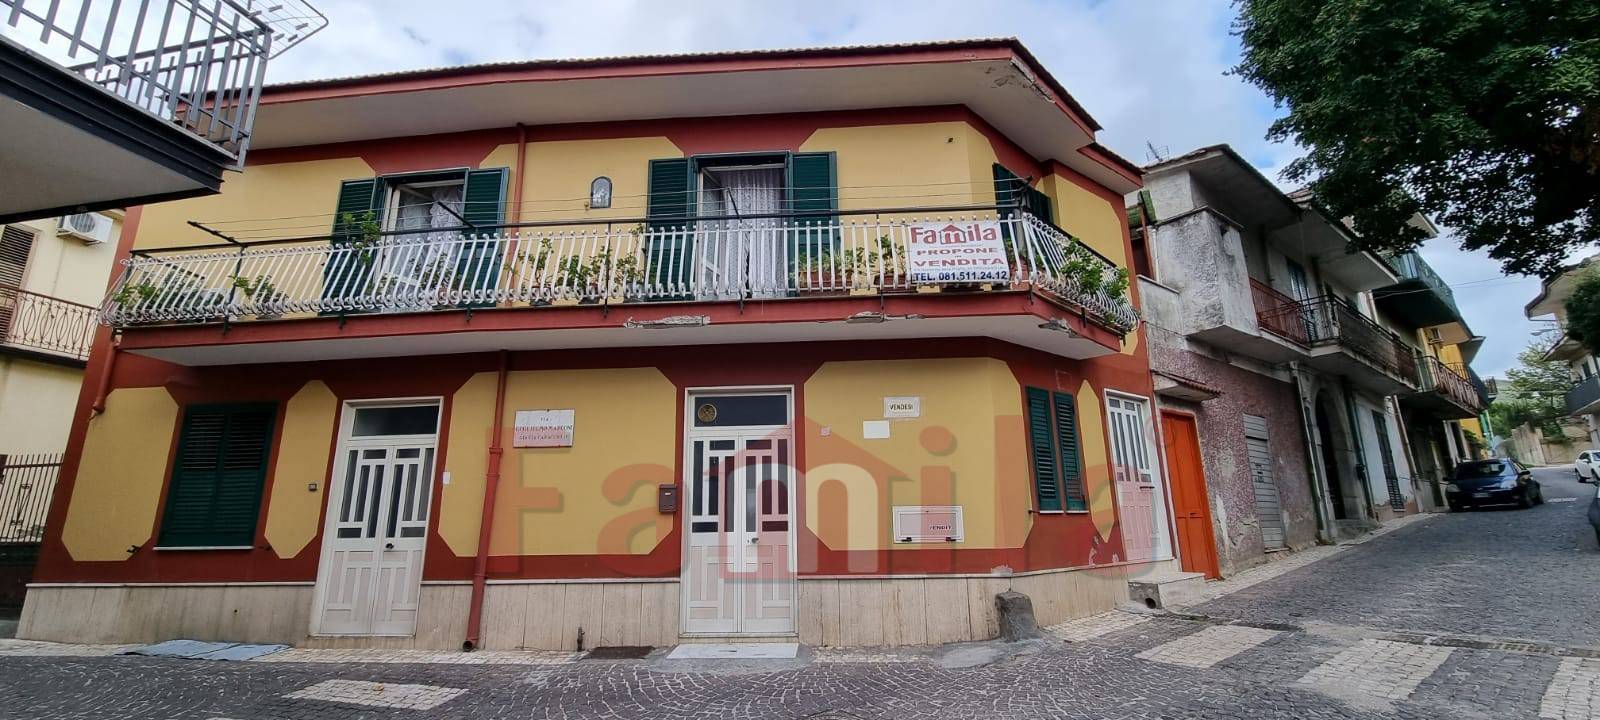 Soluzione Indipendente in vendita a Sirignano, 4 locali, prezzo € 90.000 | CambioCasa.it